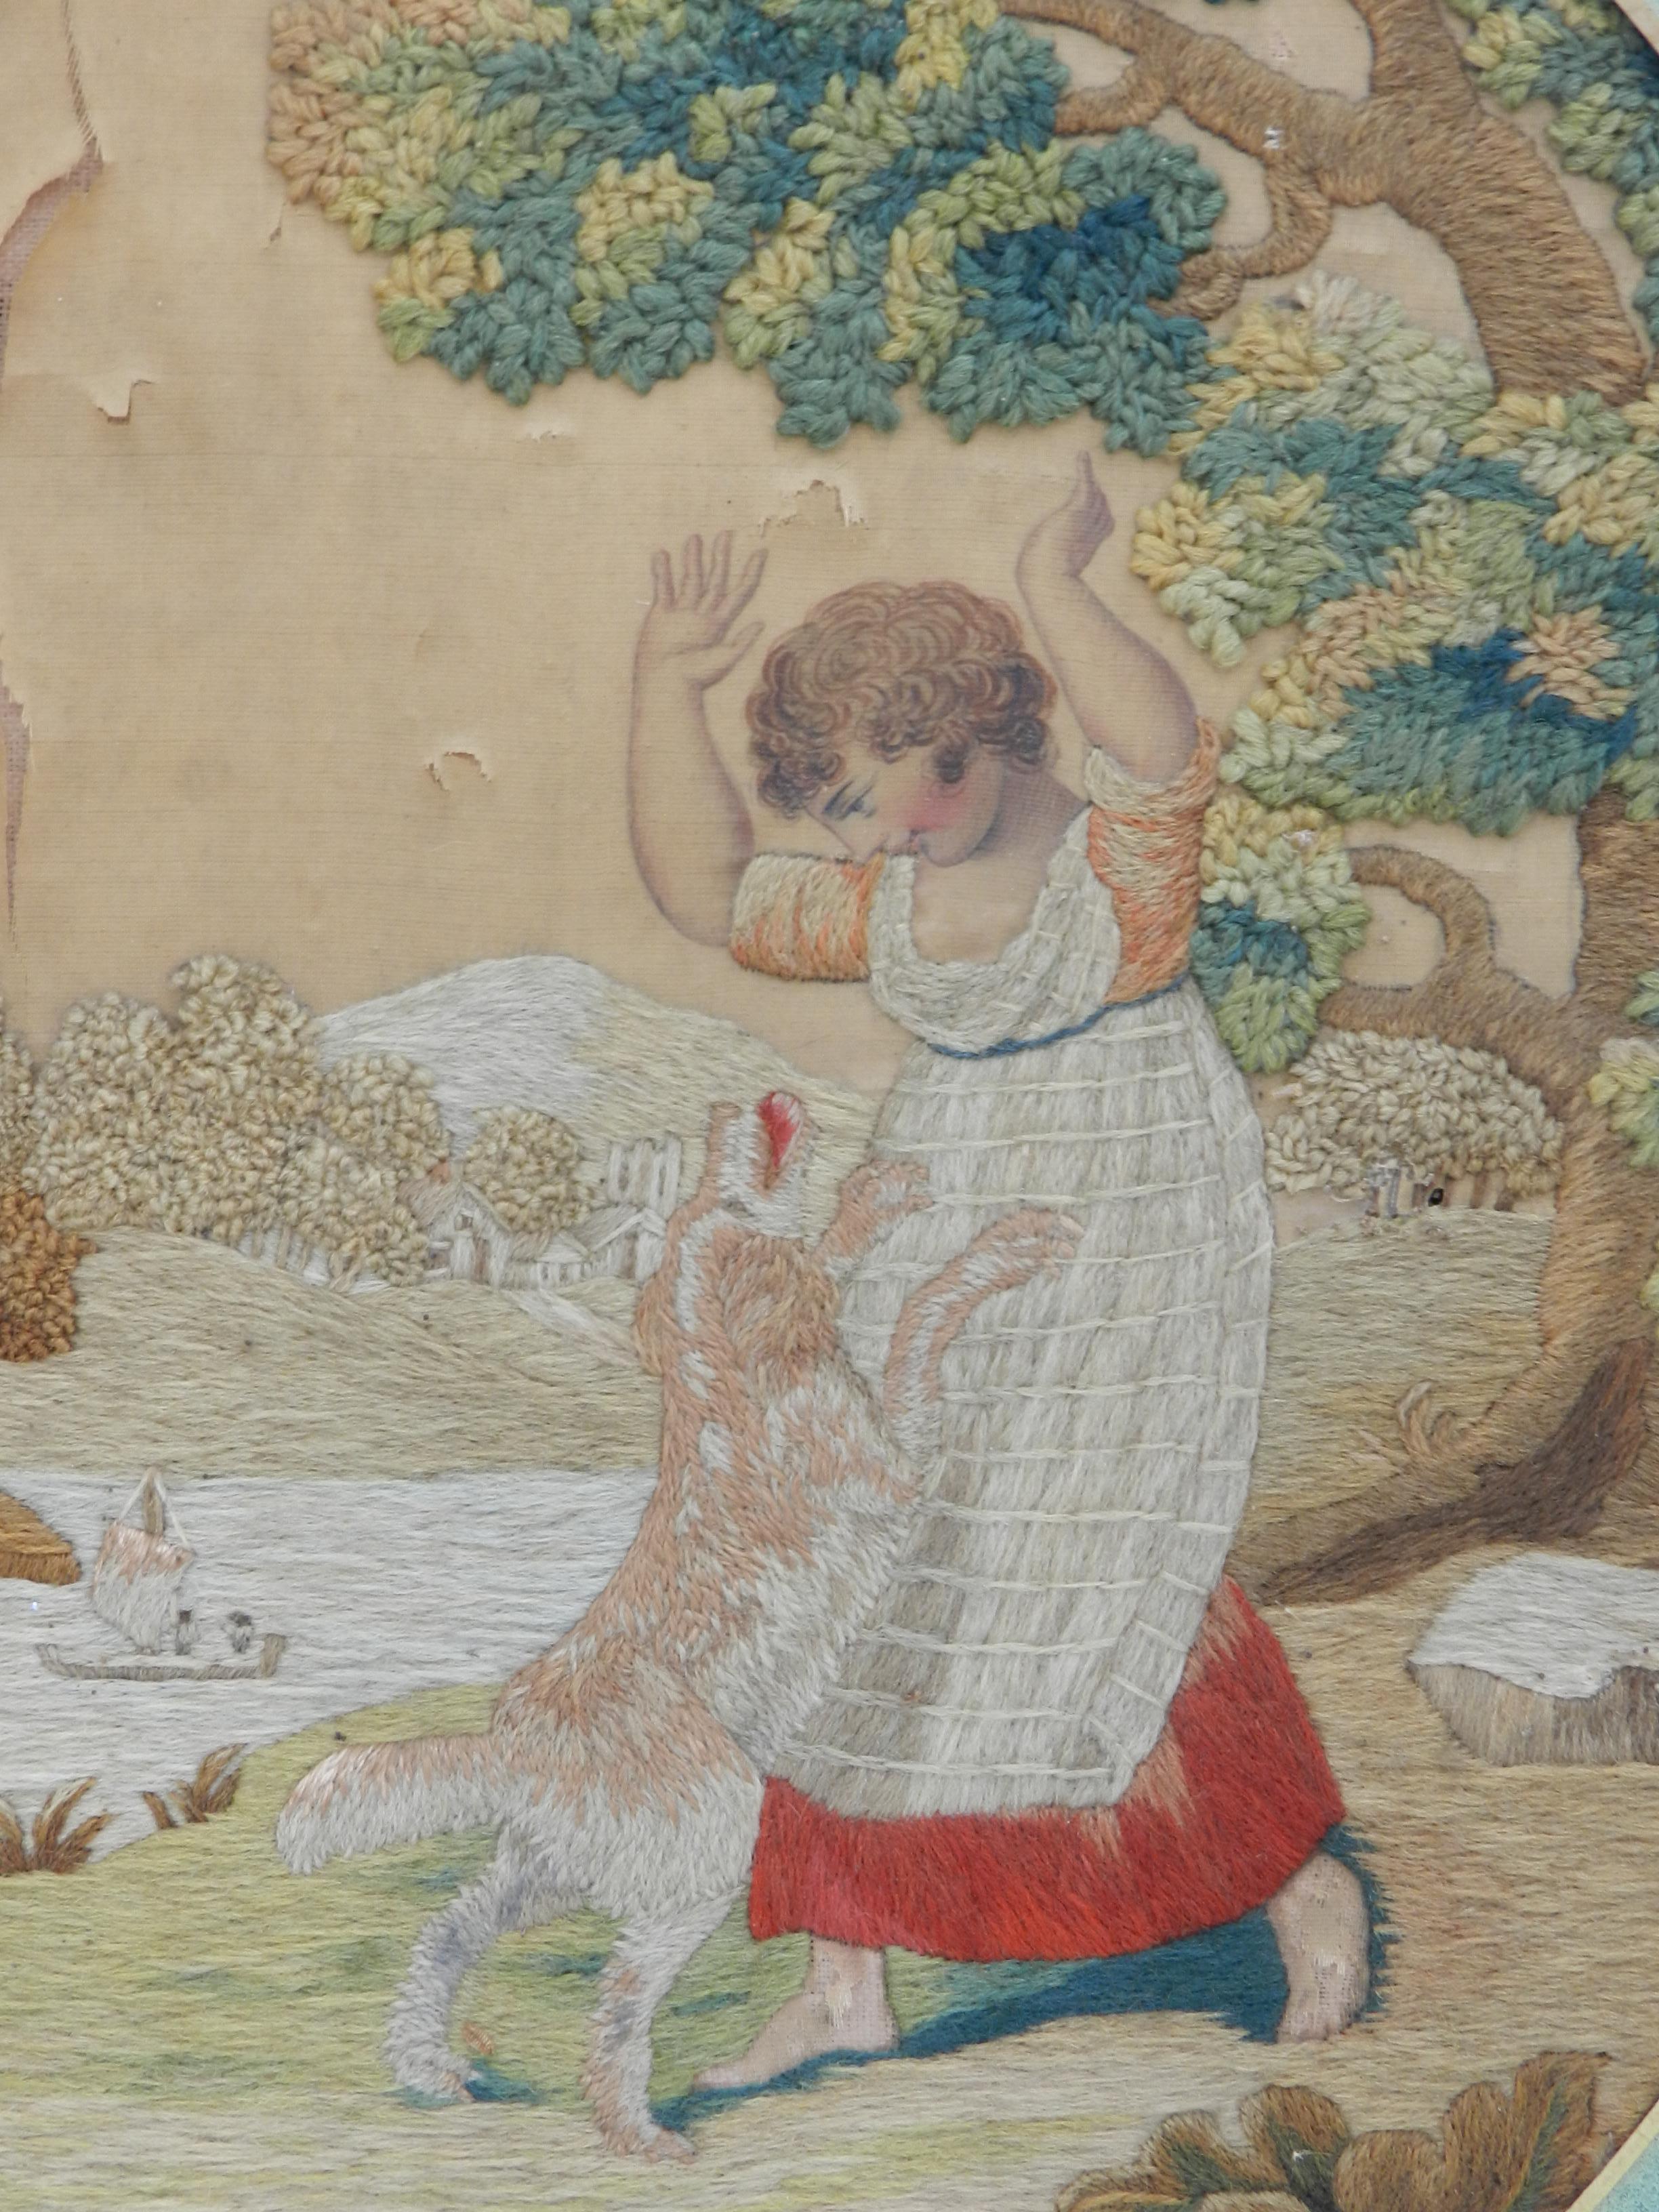 19. Jahrhundert Hund und Kind Wandteppich Französisch Hand genäht Nadelspitze 
Leicht notleidend mit Flecken auf dem Hintergrund
Es hat immer noch eine Menge Charme 
Dekorative gestickte Wollarbeit Petit Point 
Ungerahmt
Guter antiker Zustand für